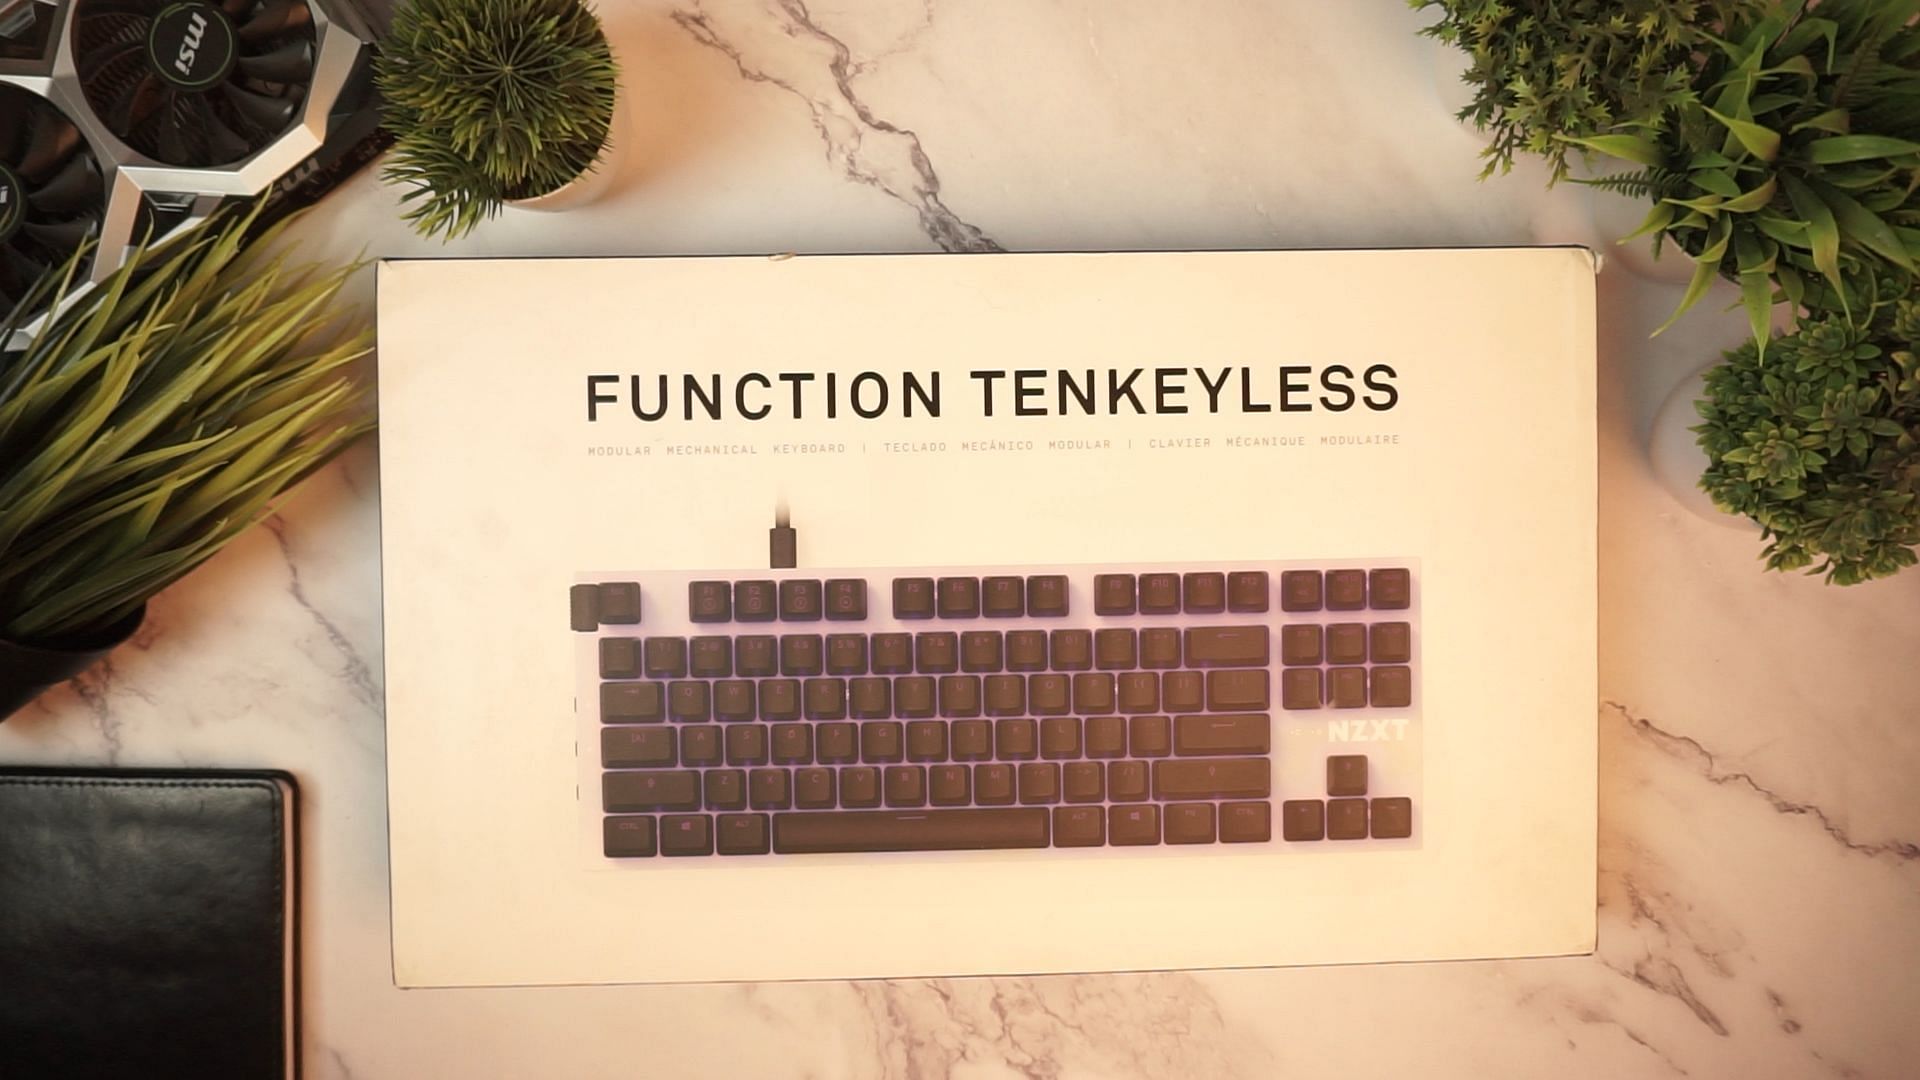 Packaging of the Function keyboard (Image via Sportskeeda)